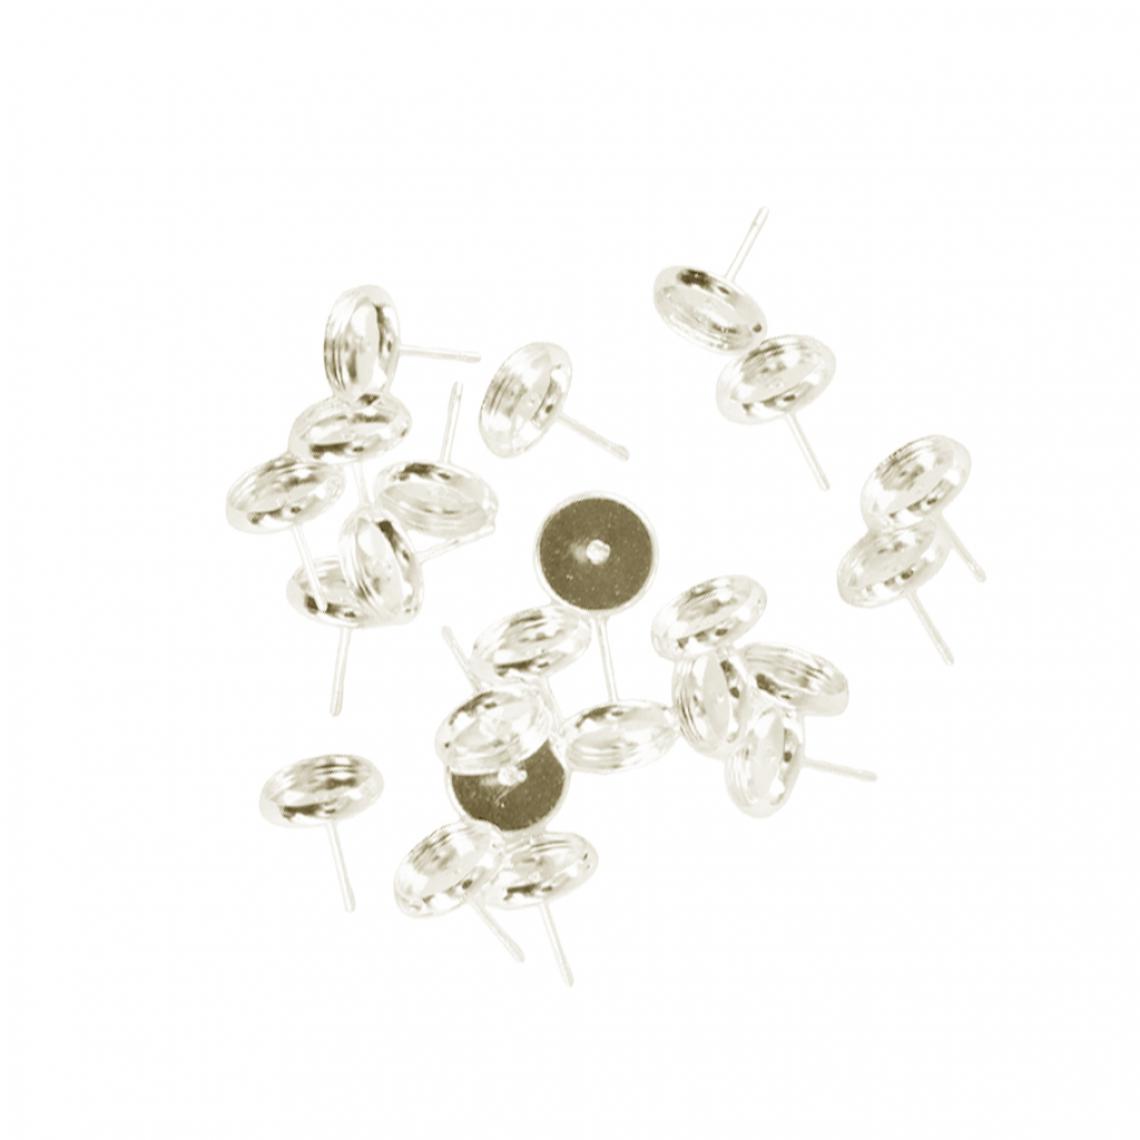 marque generique - 24 pièces blanc 8mm boucle d'oreille plateau cabochon réglage bijoux diy argent - Perles